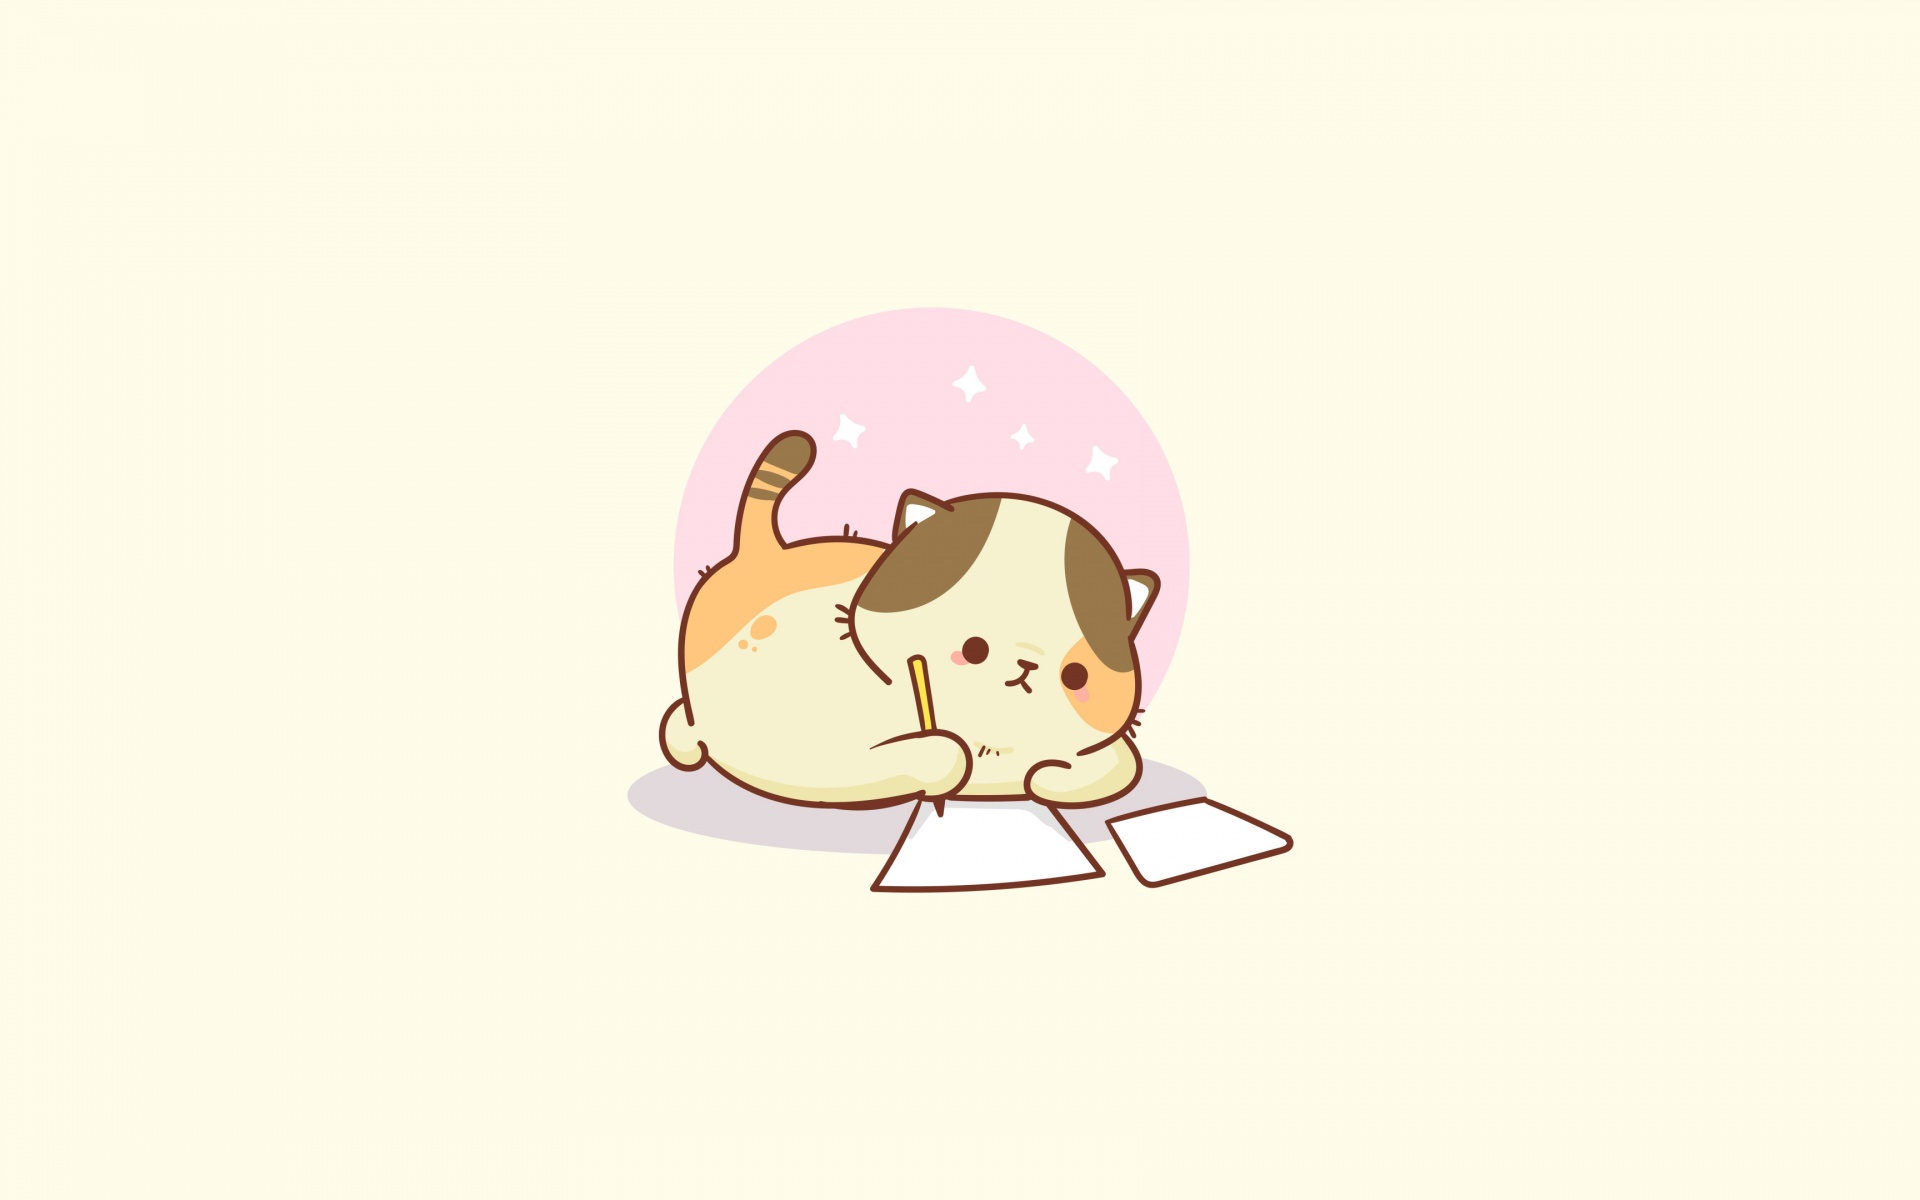 Kawaii Cat Wallpaper 4K - Bạn là một tín đồ ngưỡng mộ của những con mèo cực kỳ dễ thương? Với độ phân giải 4K chất lượng cao, những hình ảnh mèo Kawaii ngọt ngào sẽ làm cho bạn rơi vào mê mẩn và yêu thích ngay từ cái nhìn đầu tiên.